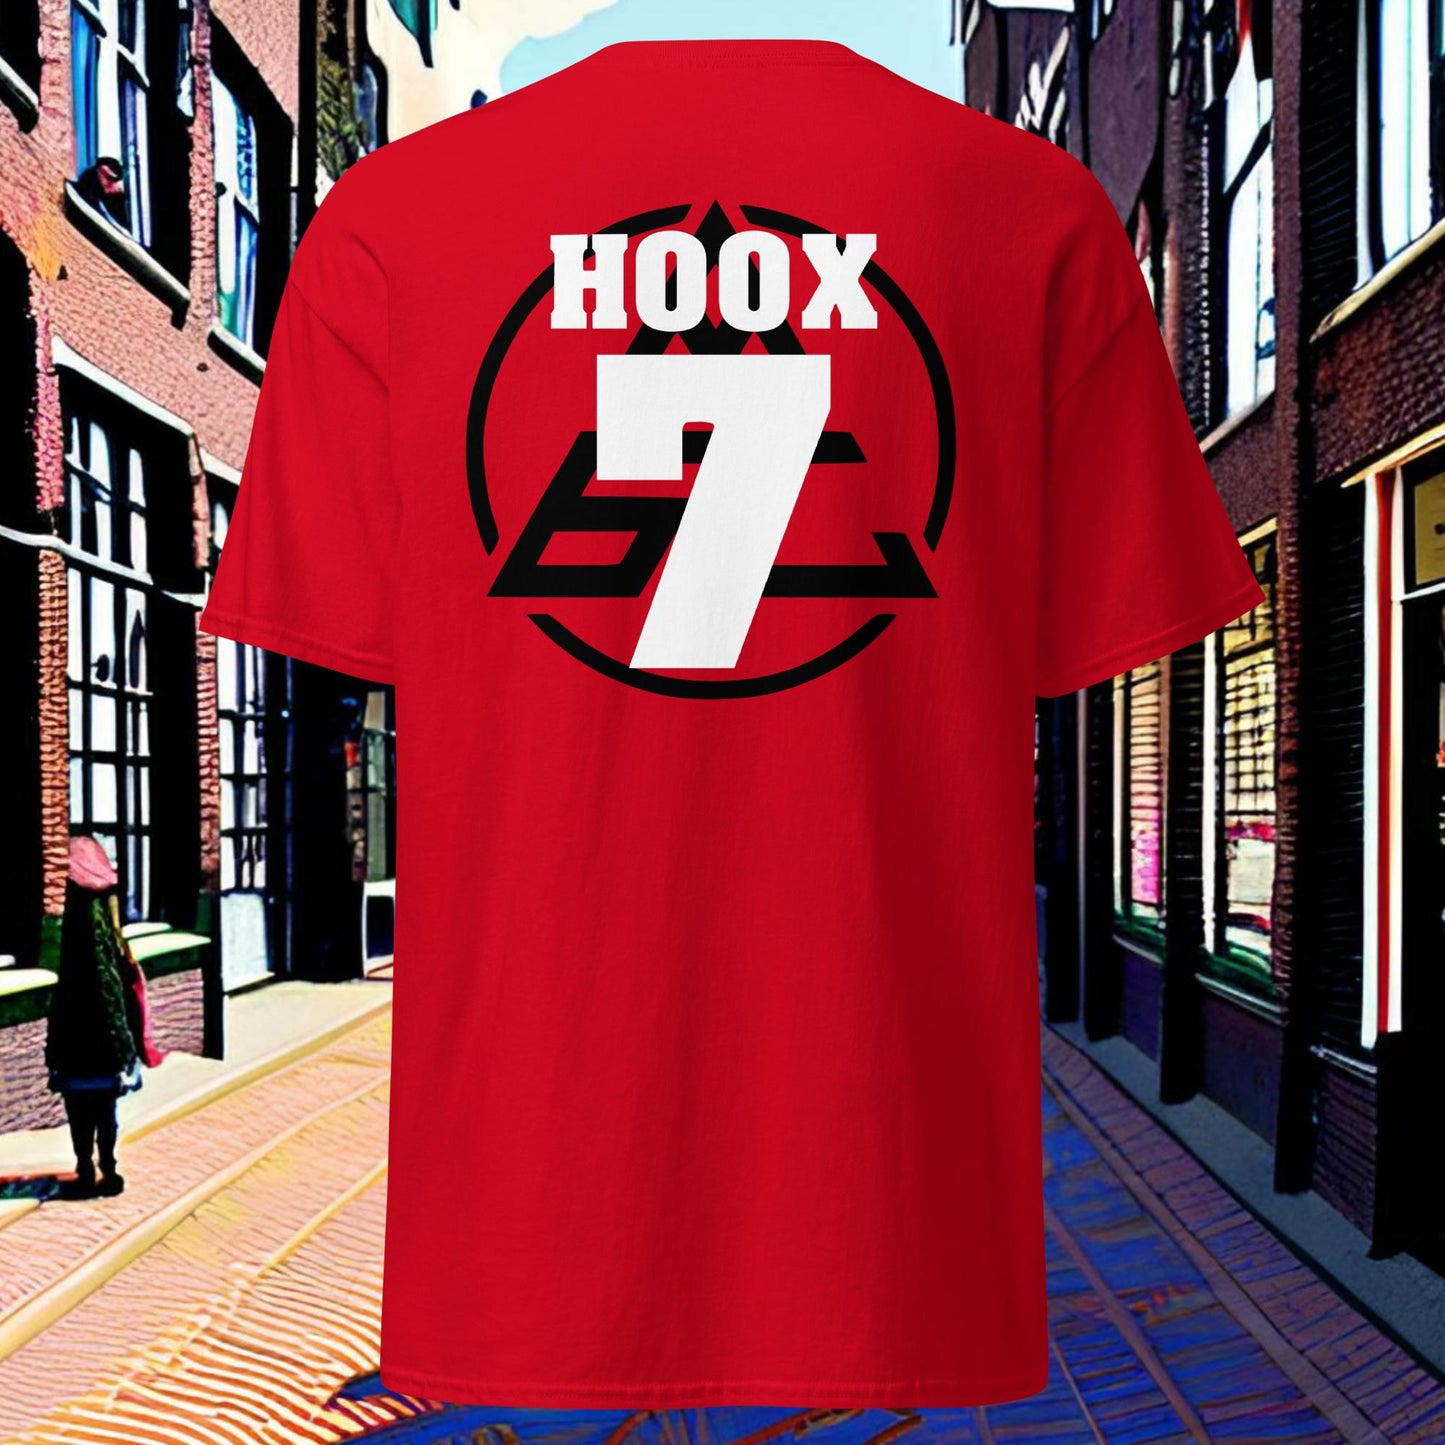 Negen Zeven - Hoox #7